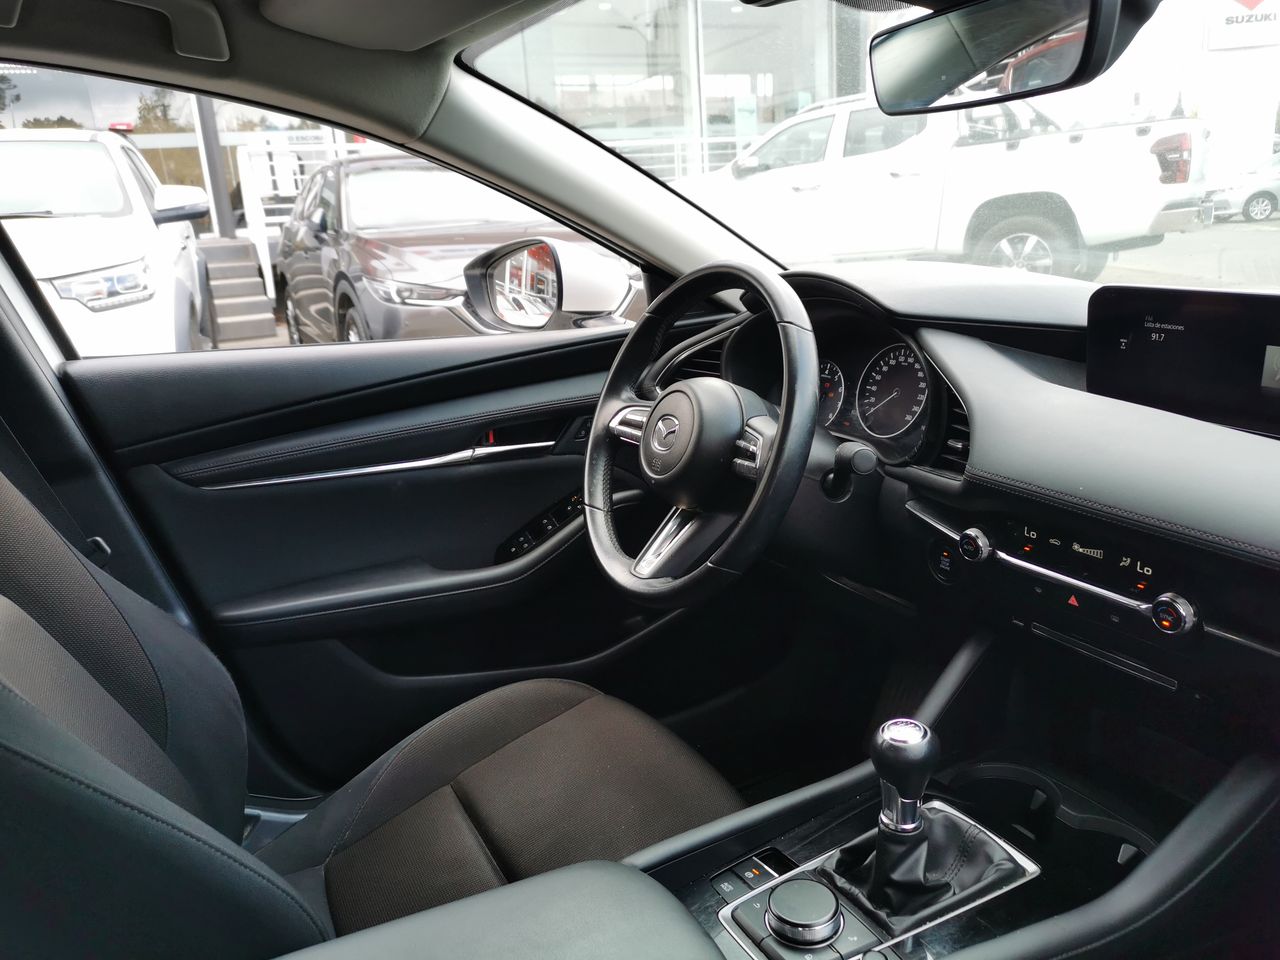 Mazda 3 3 Sedan 2.0 2021 Usado en Usados de Primera - Sergio Escobar